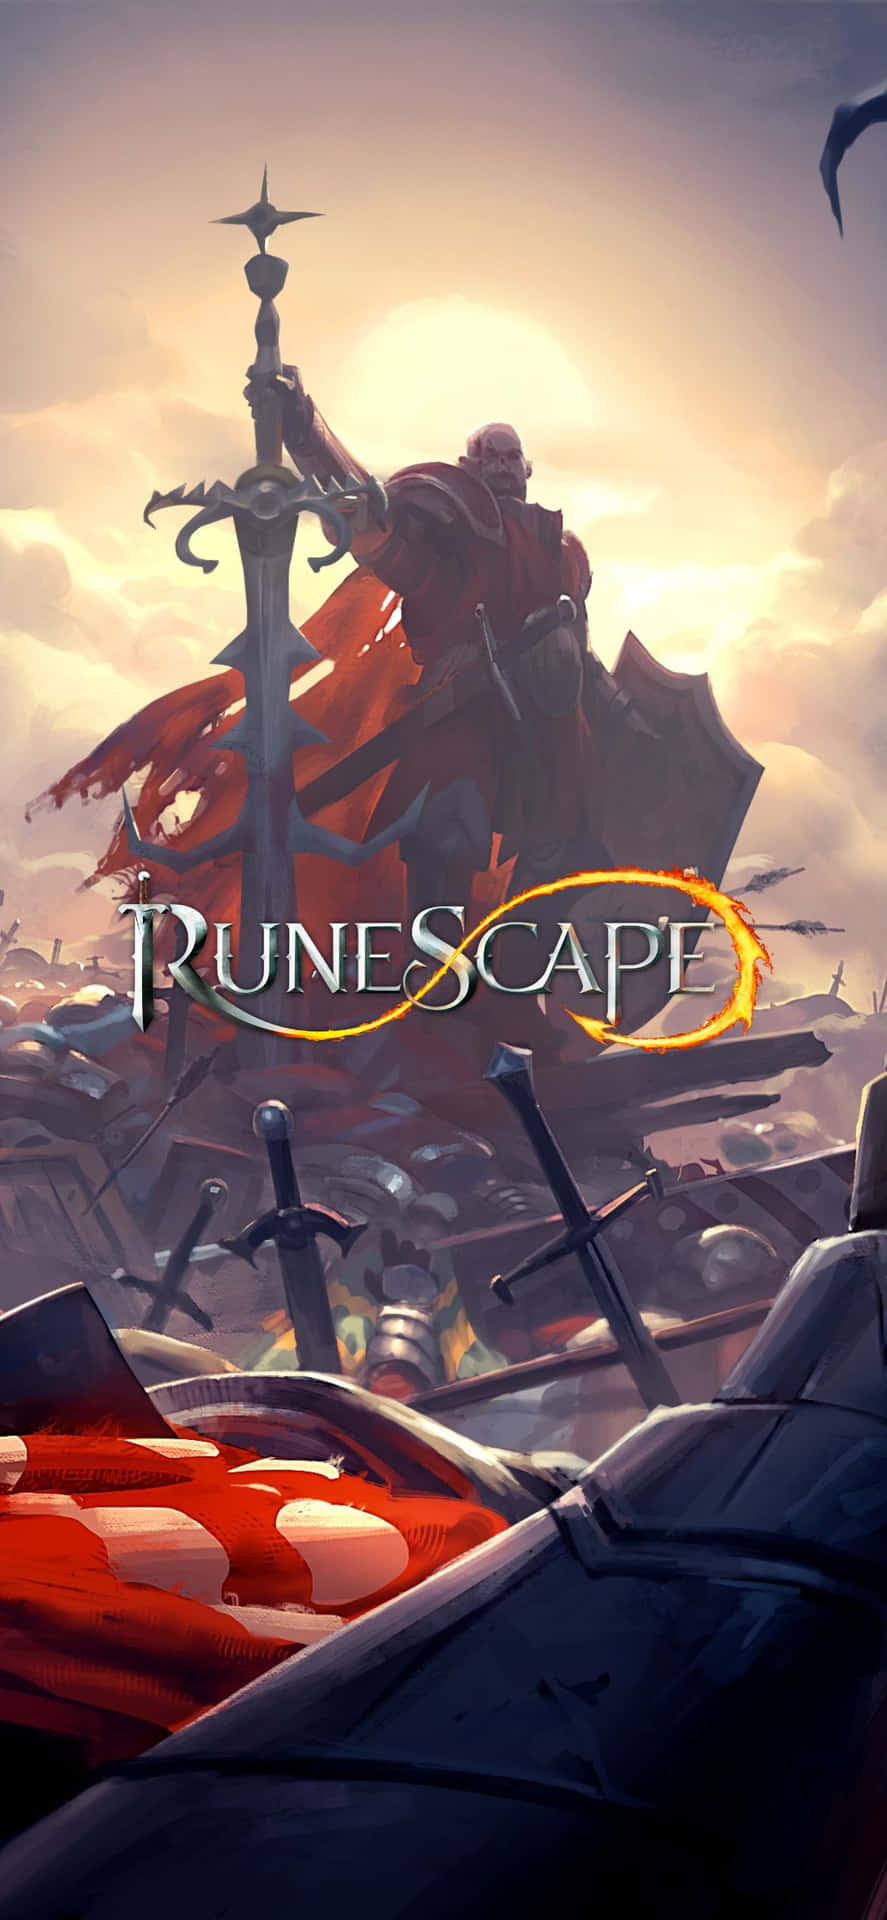 Runescape - Screenshots